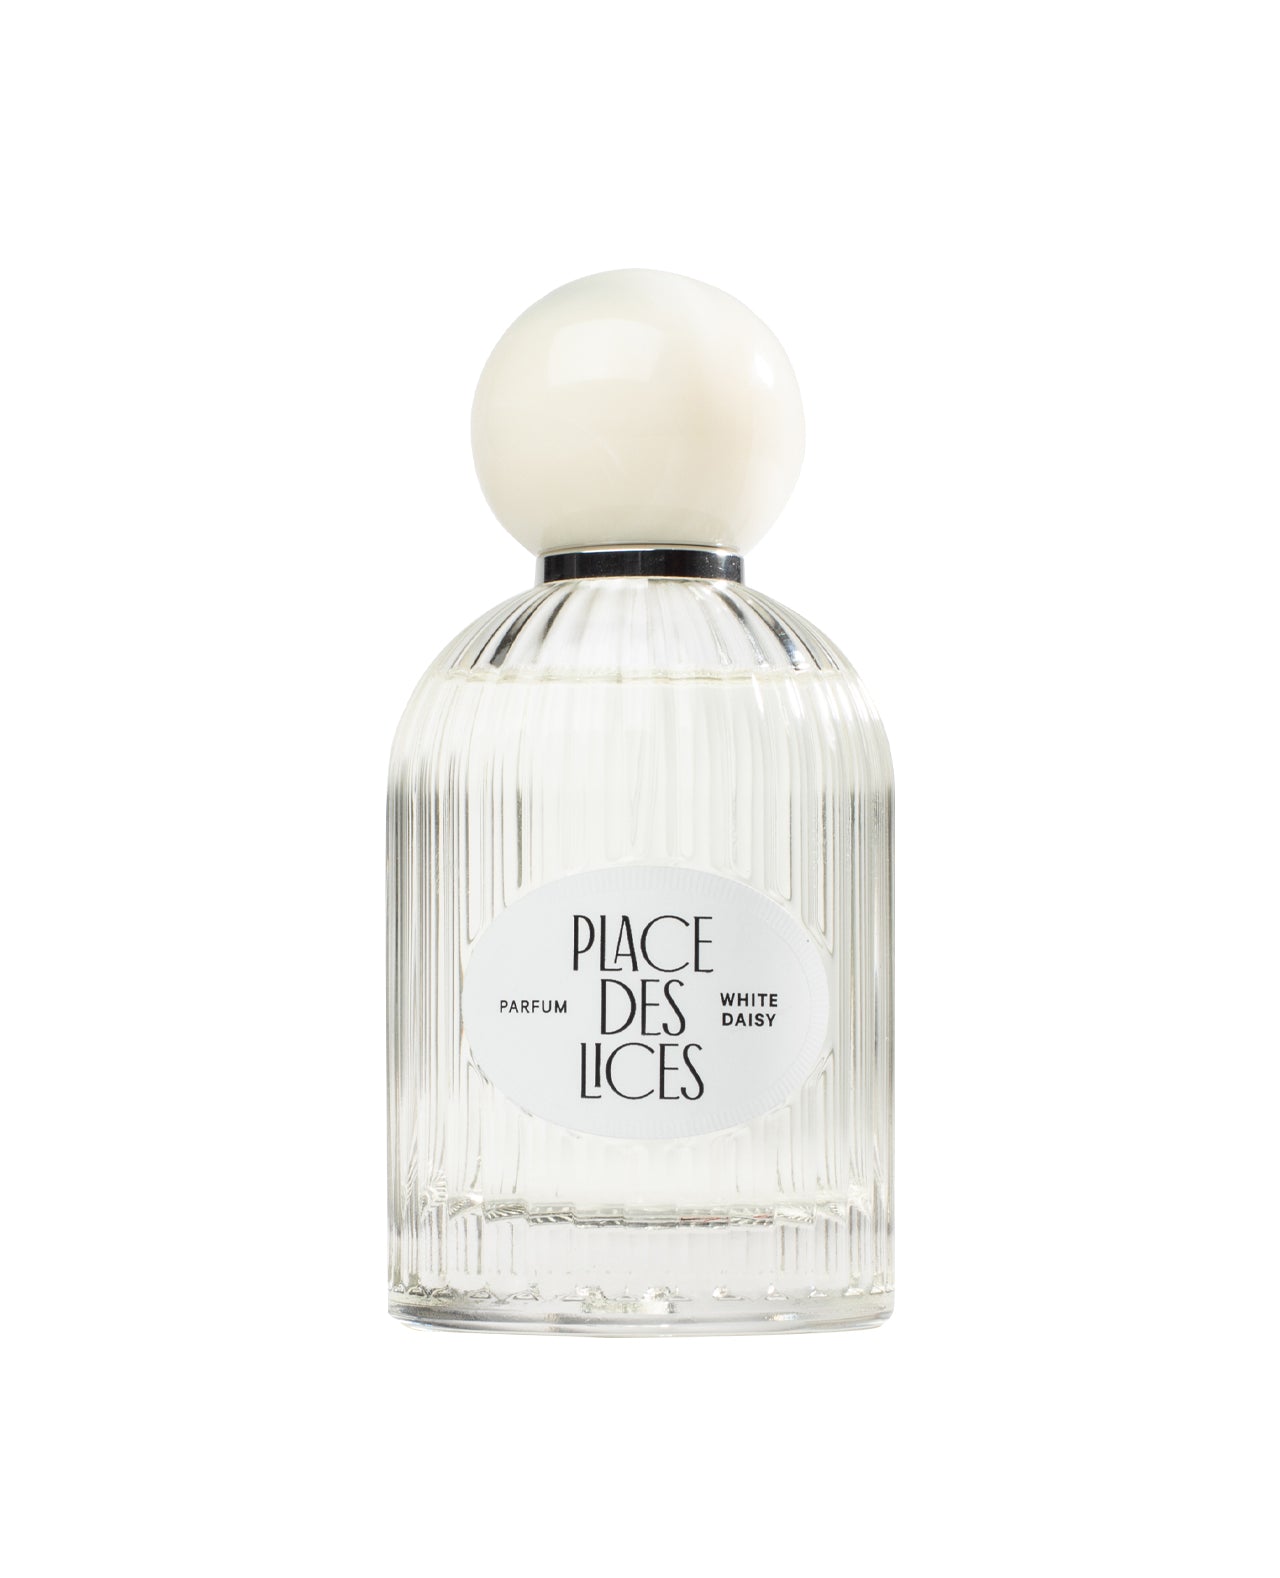 White Daisy 100ml Eau de Parfum Bottle by Place des Lices